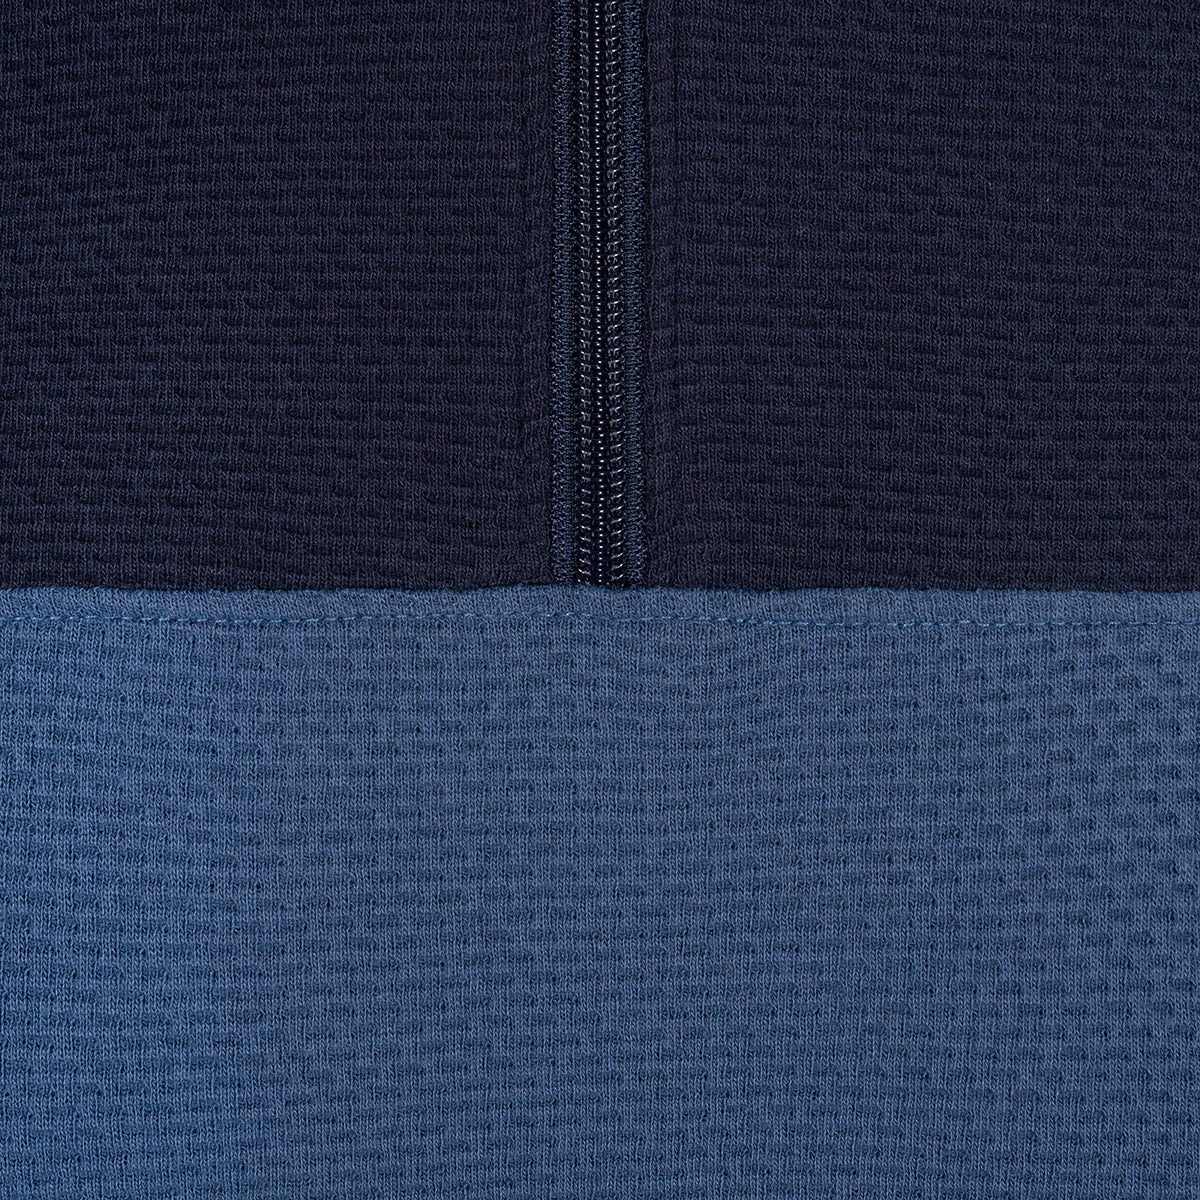 Sweater con cremallera en color azul de Perry Ellis SW00095013